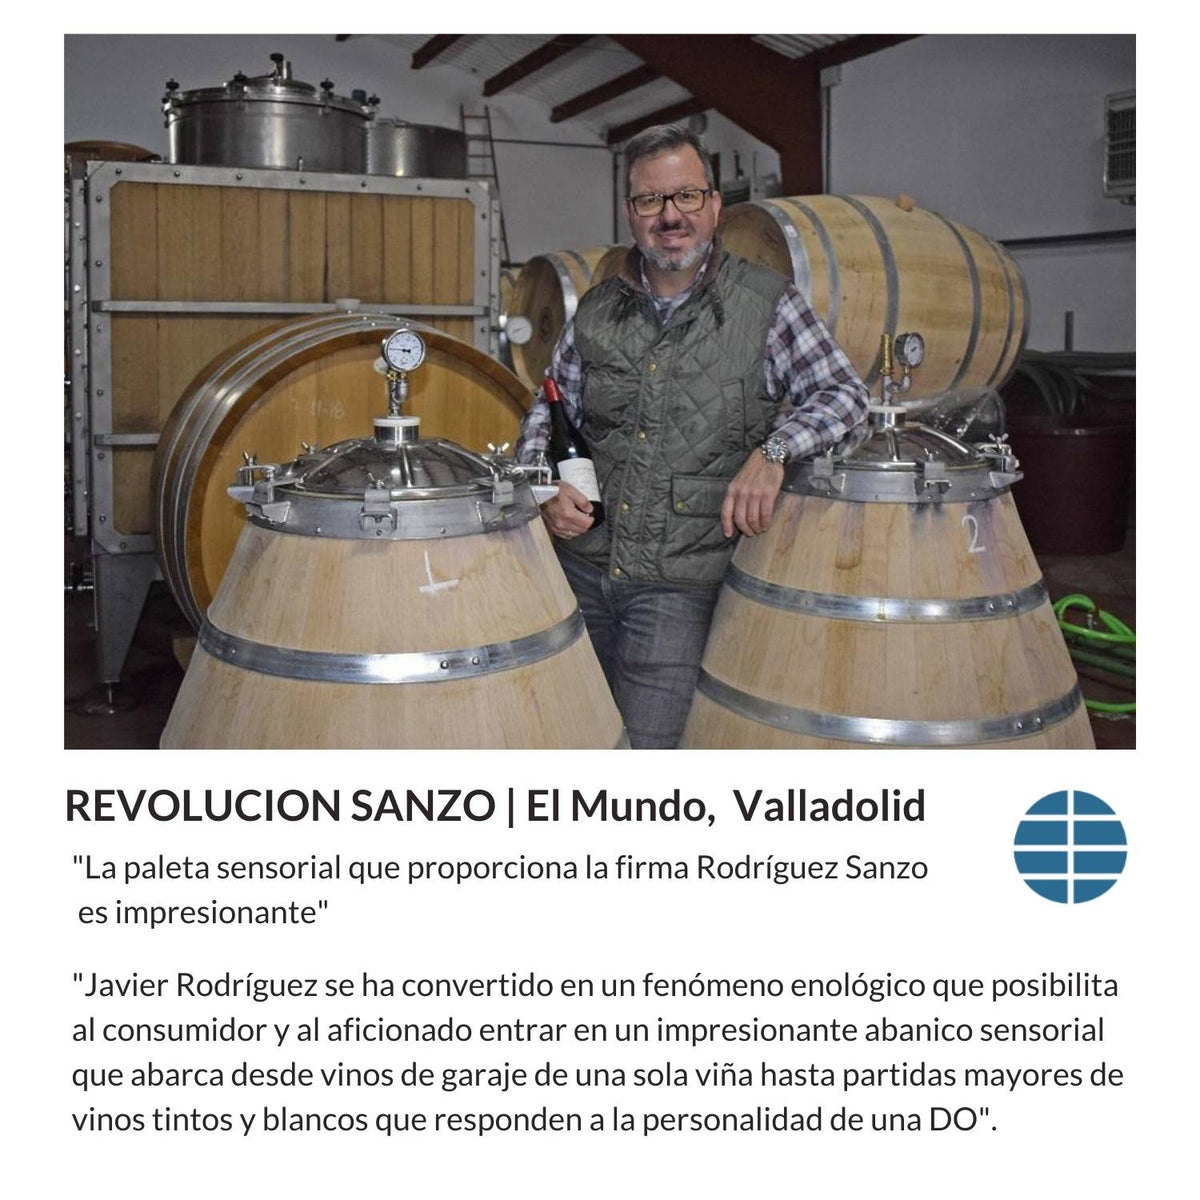 Lacrimus 5 - Rioja, 2020 - Notas de Cata | Tu tienda online de Vino en Perú 